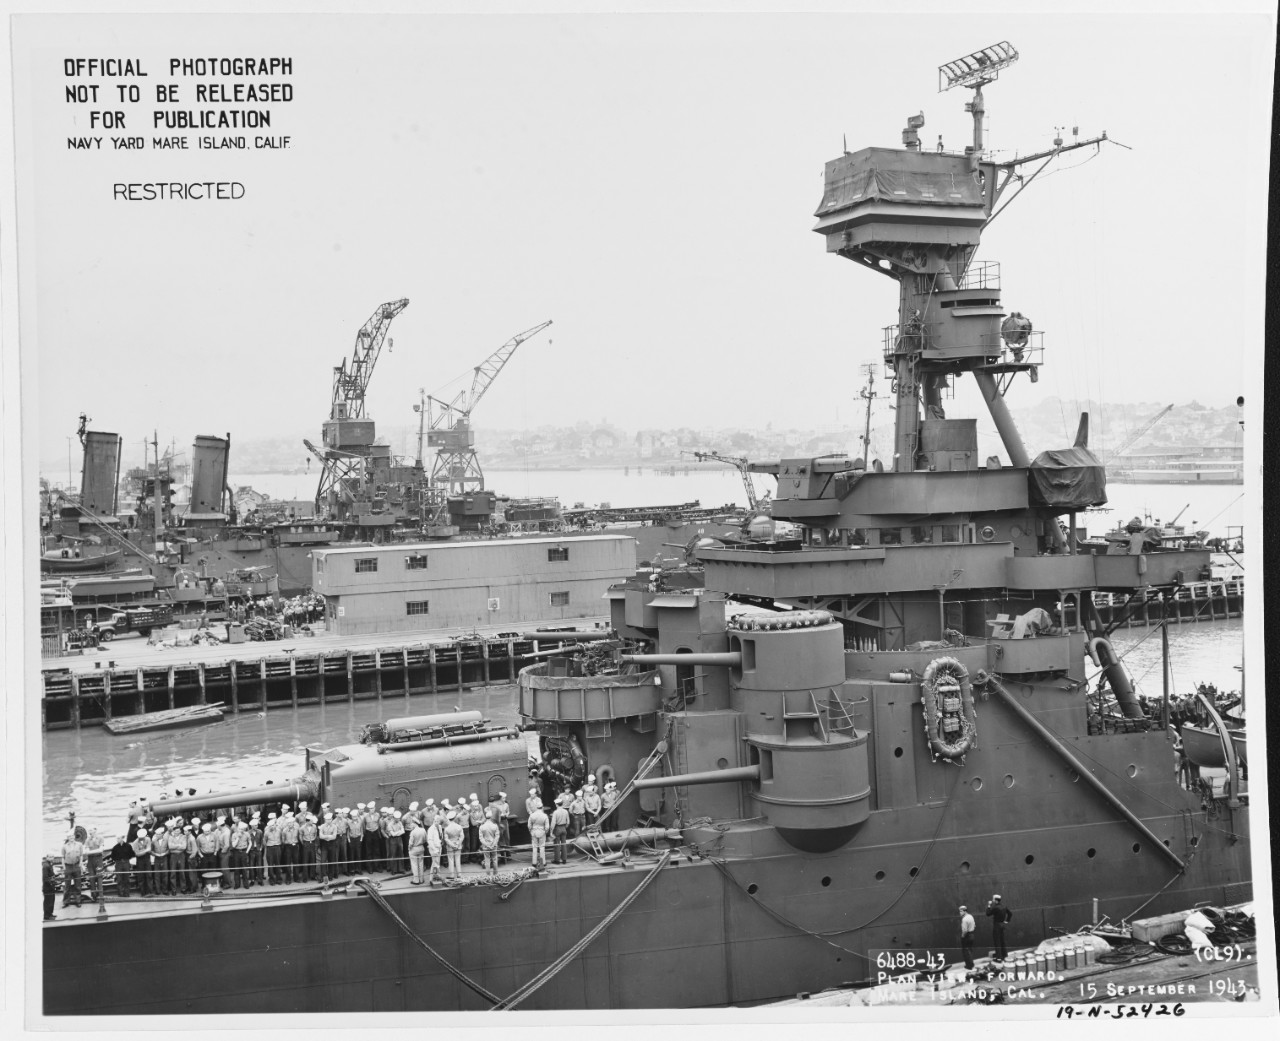 Photo #: 19-N-52426  USS Richmond (CL-9)